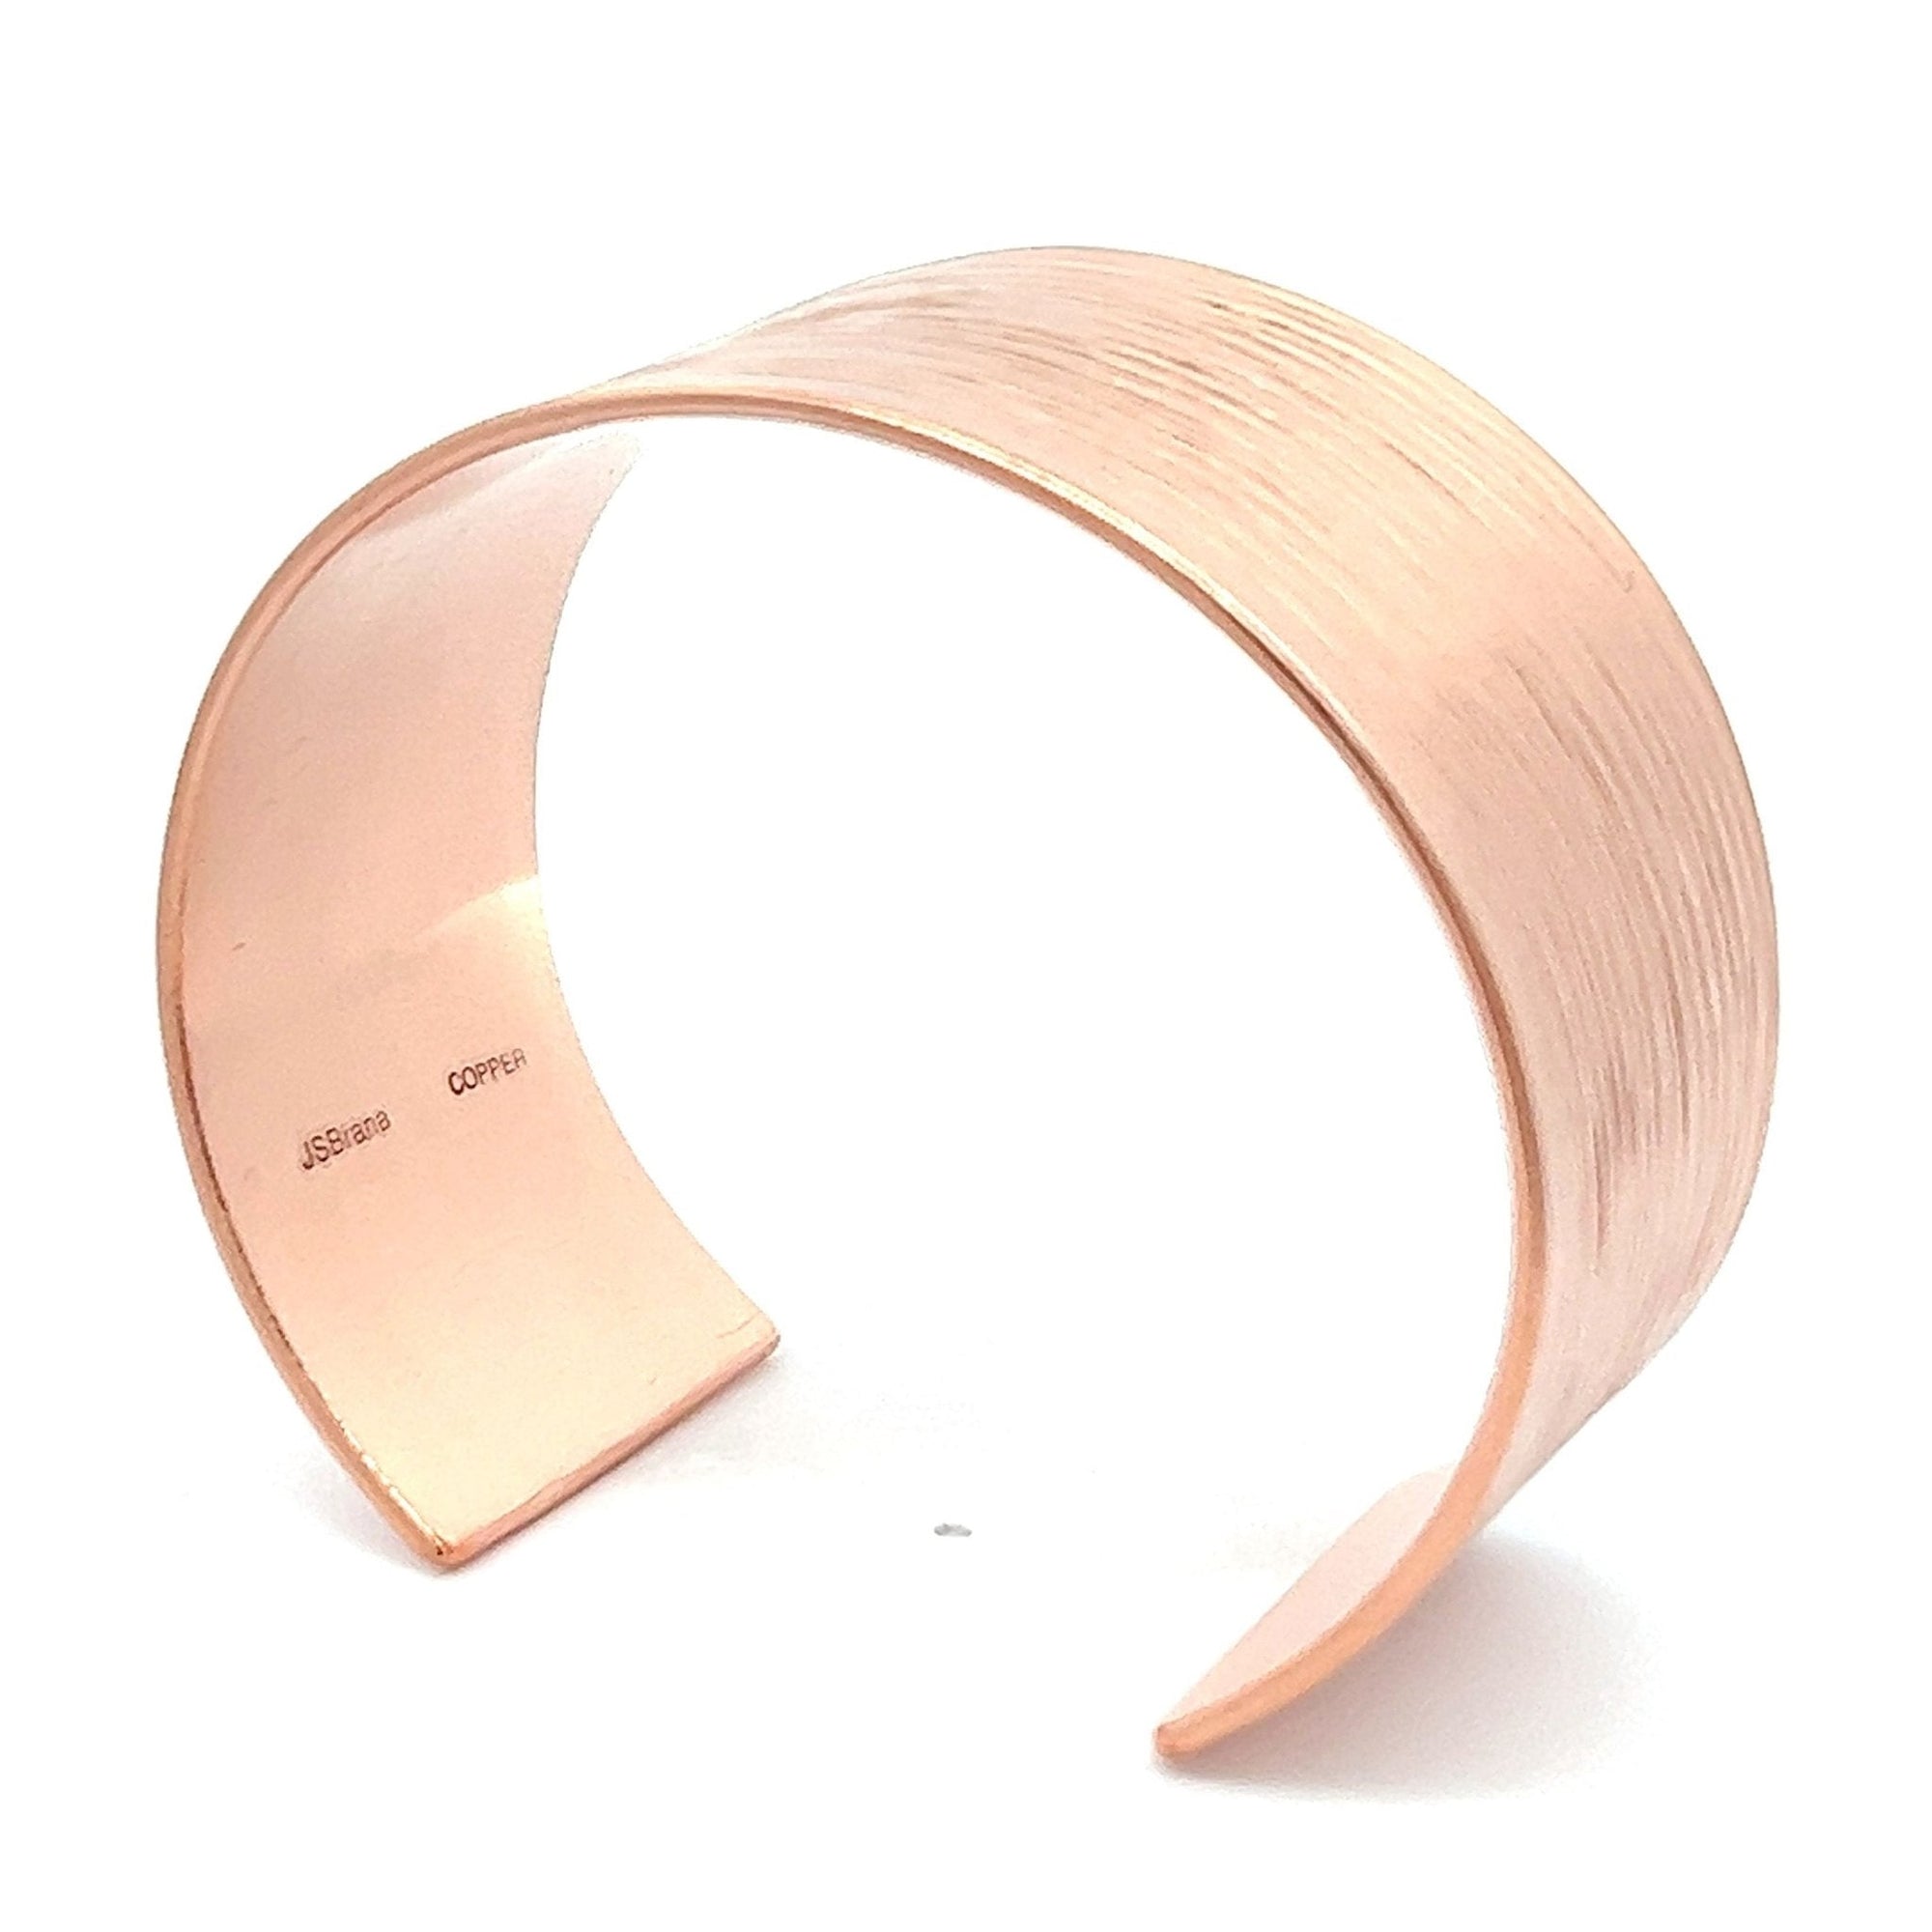 Shape of 1 Inch Wide Men's Bark Copper Cuff Bracelet 